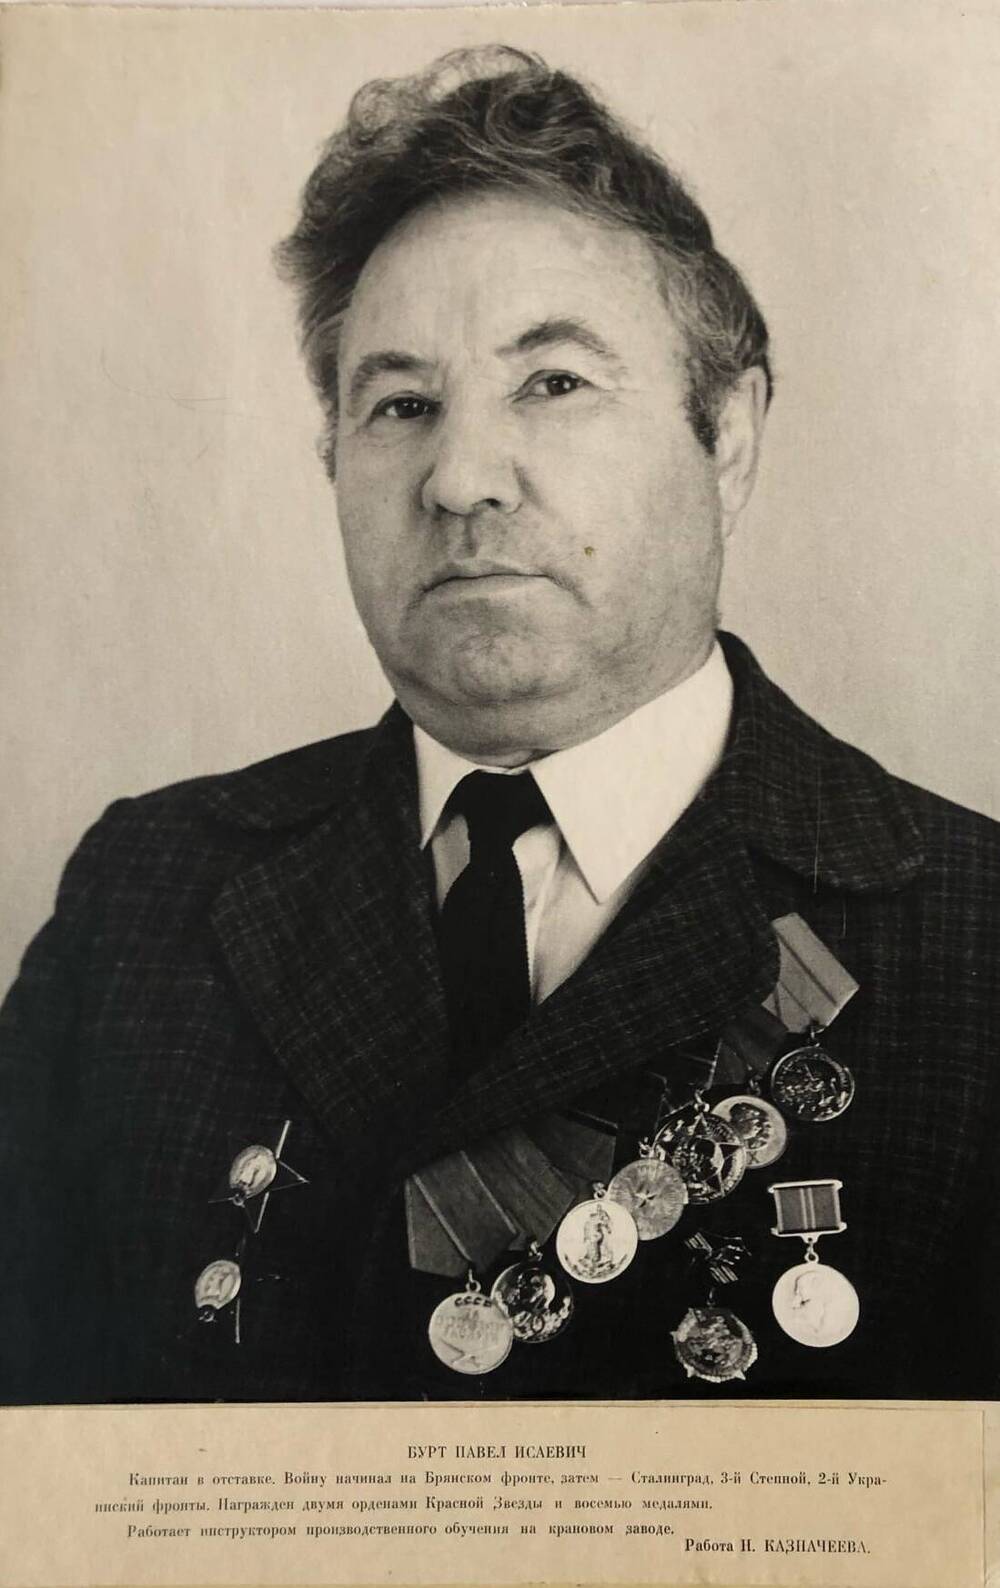 Фотография Бурт Павла Исаевича, участника Великой Отечественной войны 1941-1945 гг.